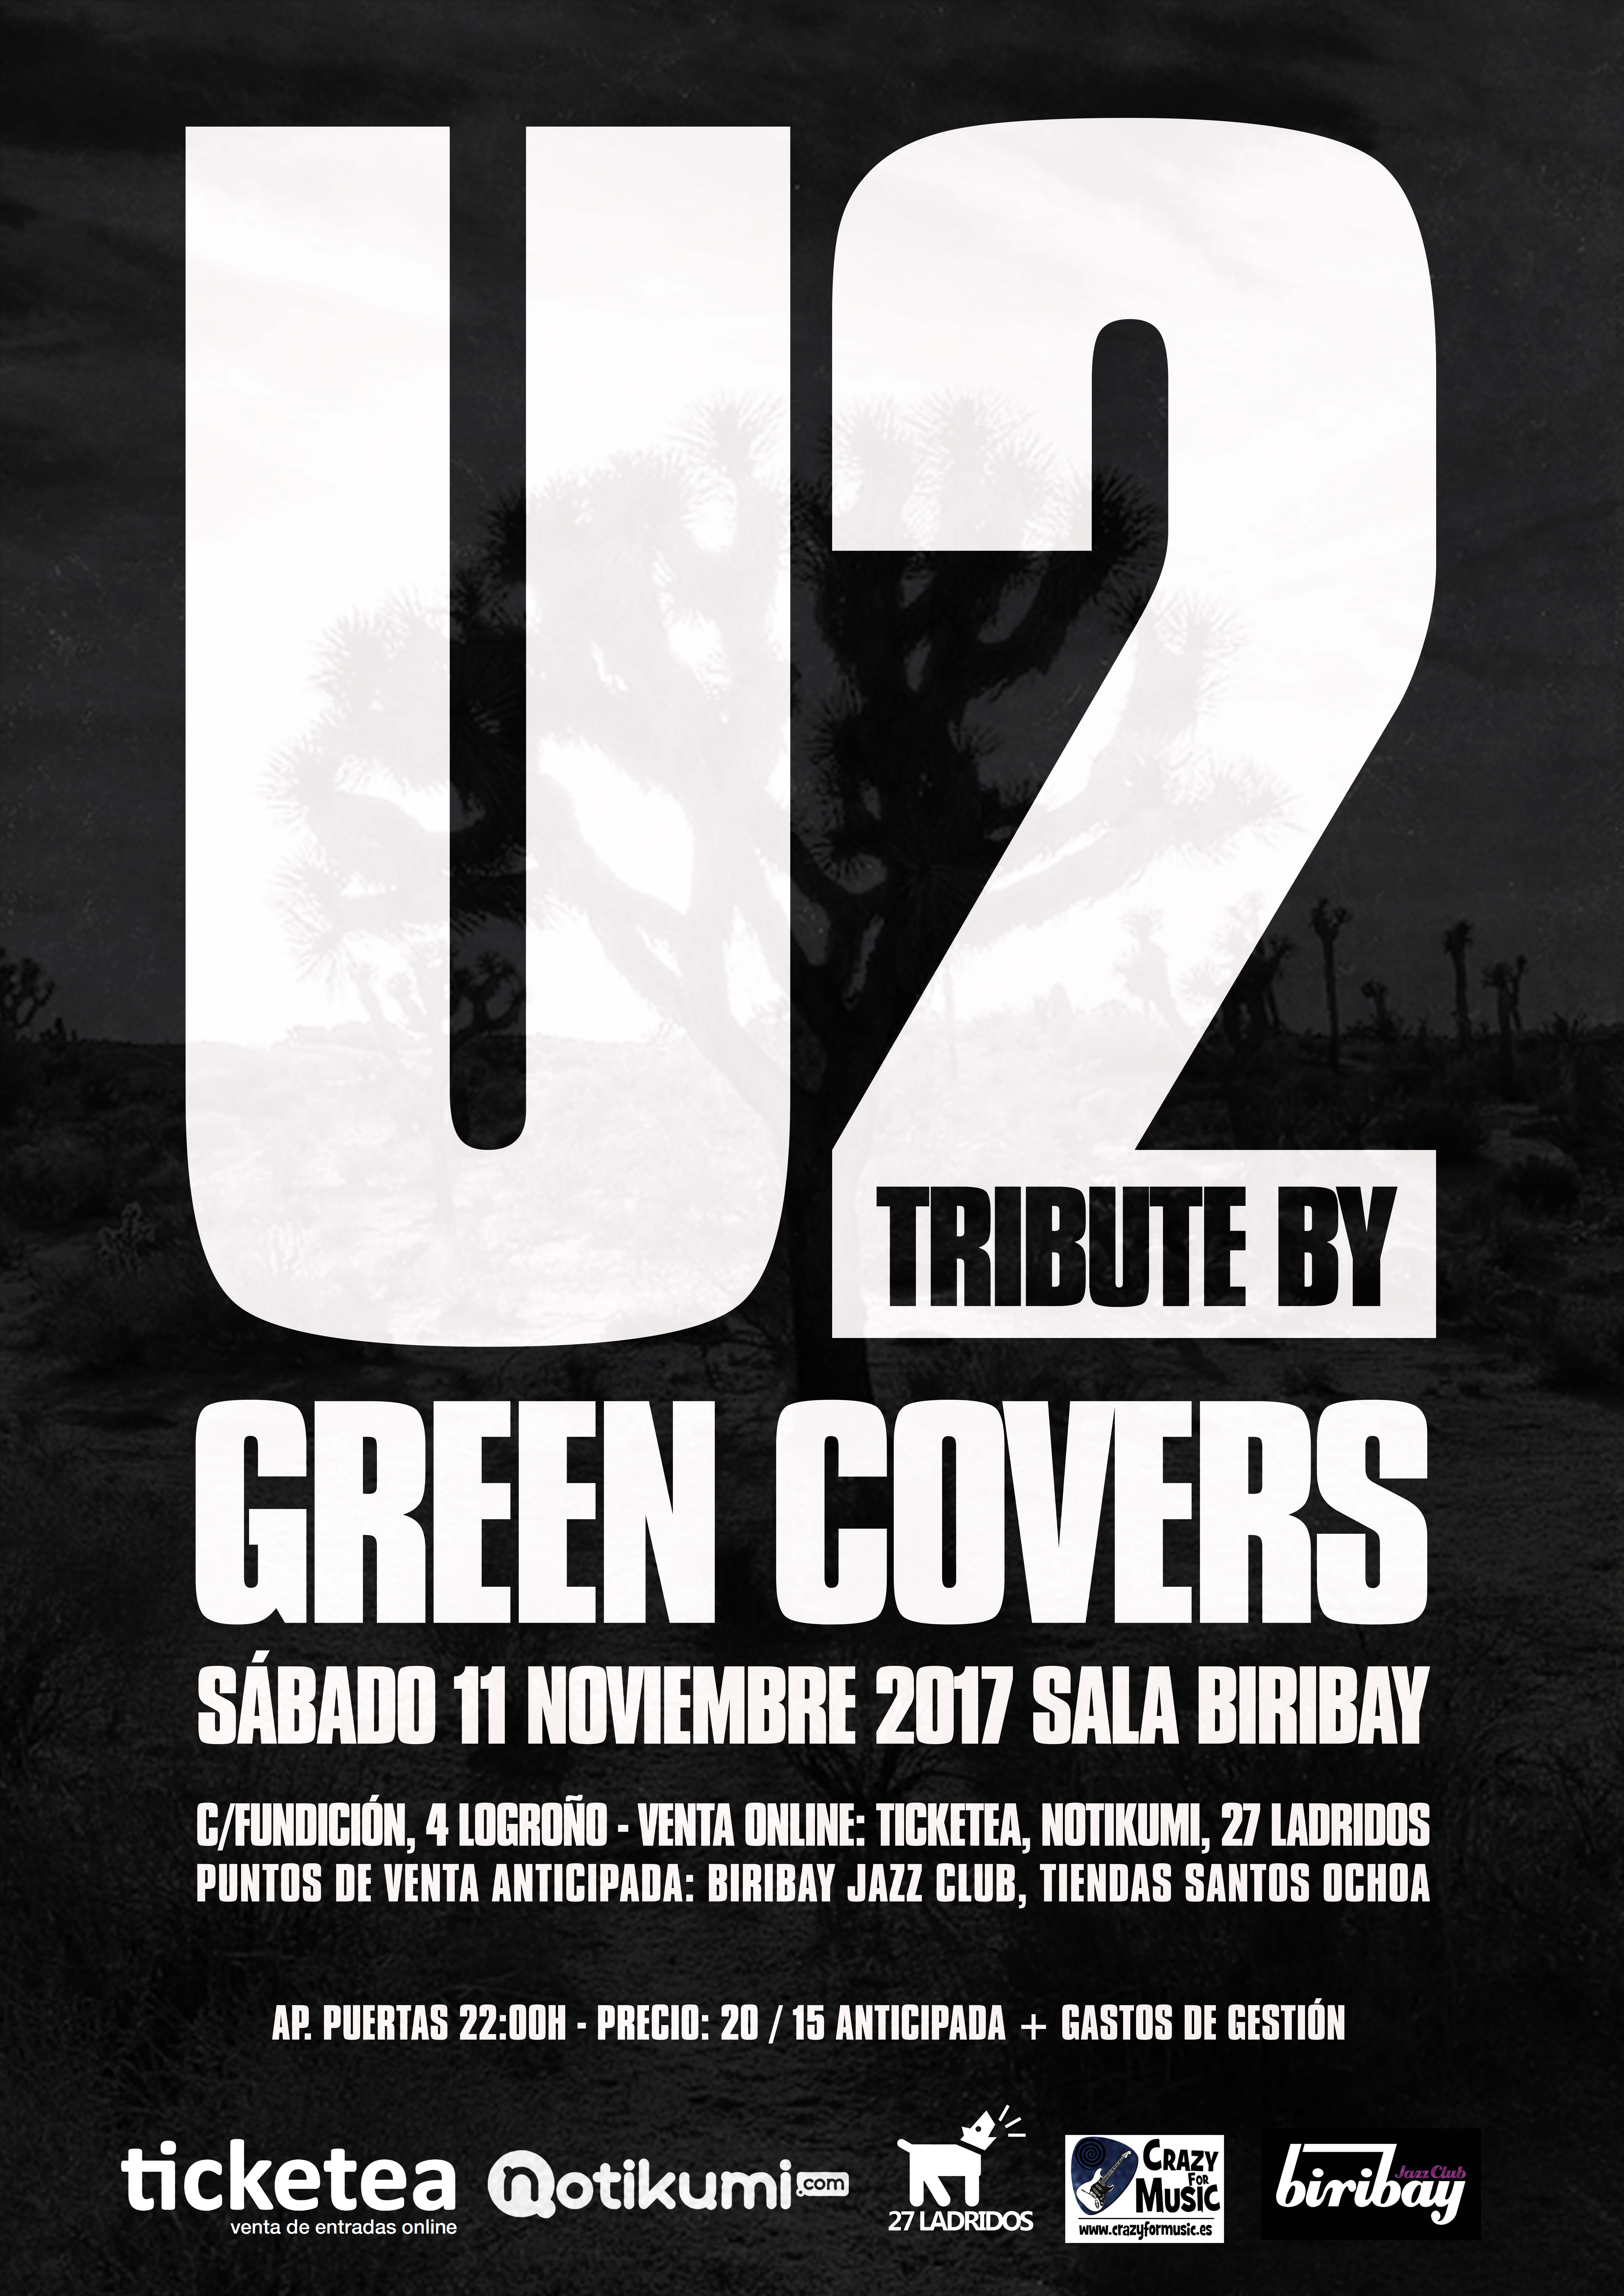 u2 tribute green covers logroño